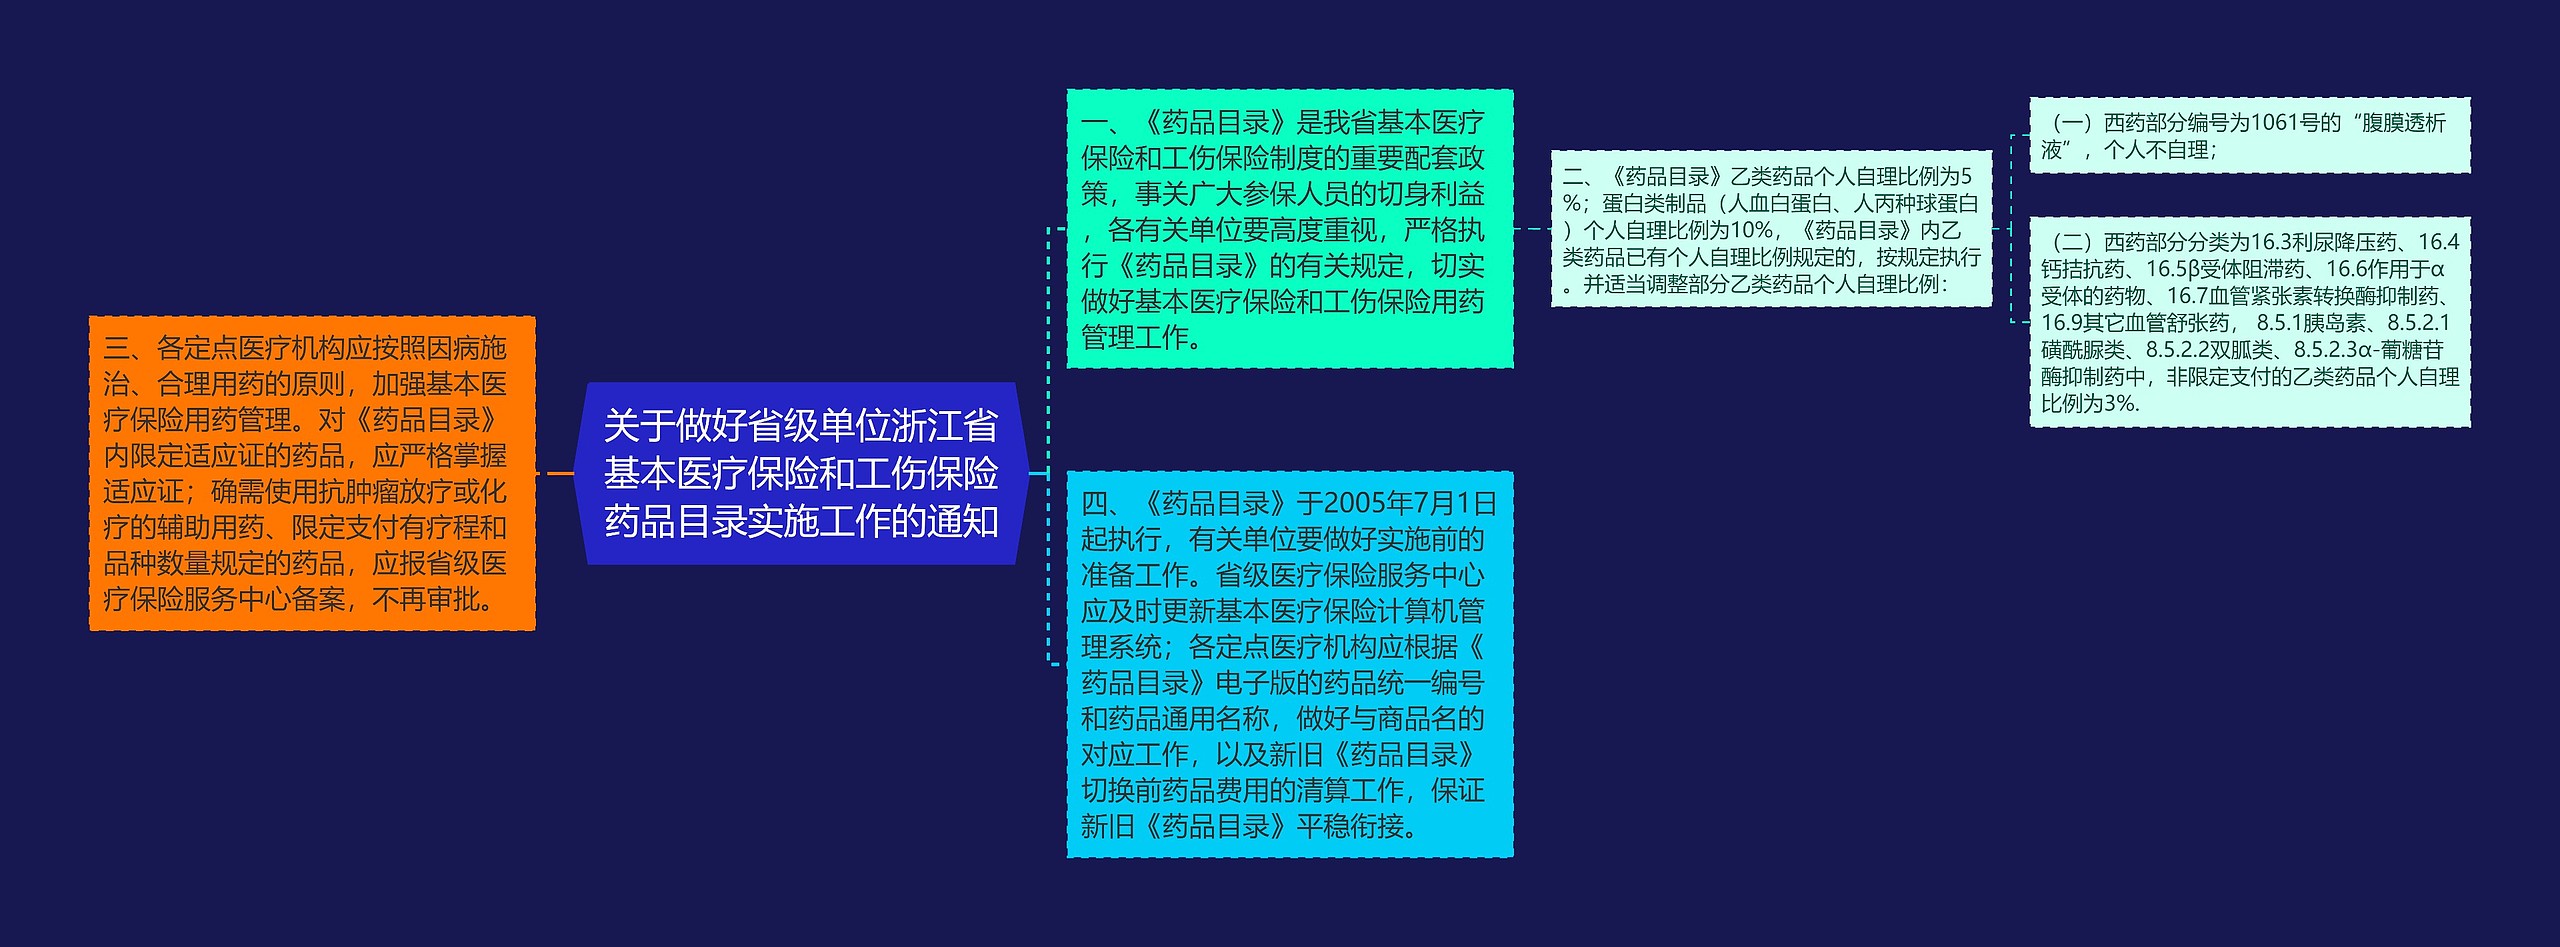 关于做好省级单位浙江省基本医疗保险和工伤保险药品目录实施工作的通知思维导图